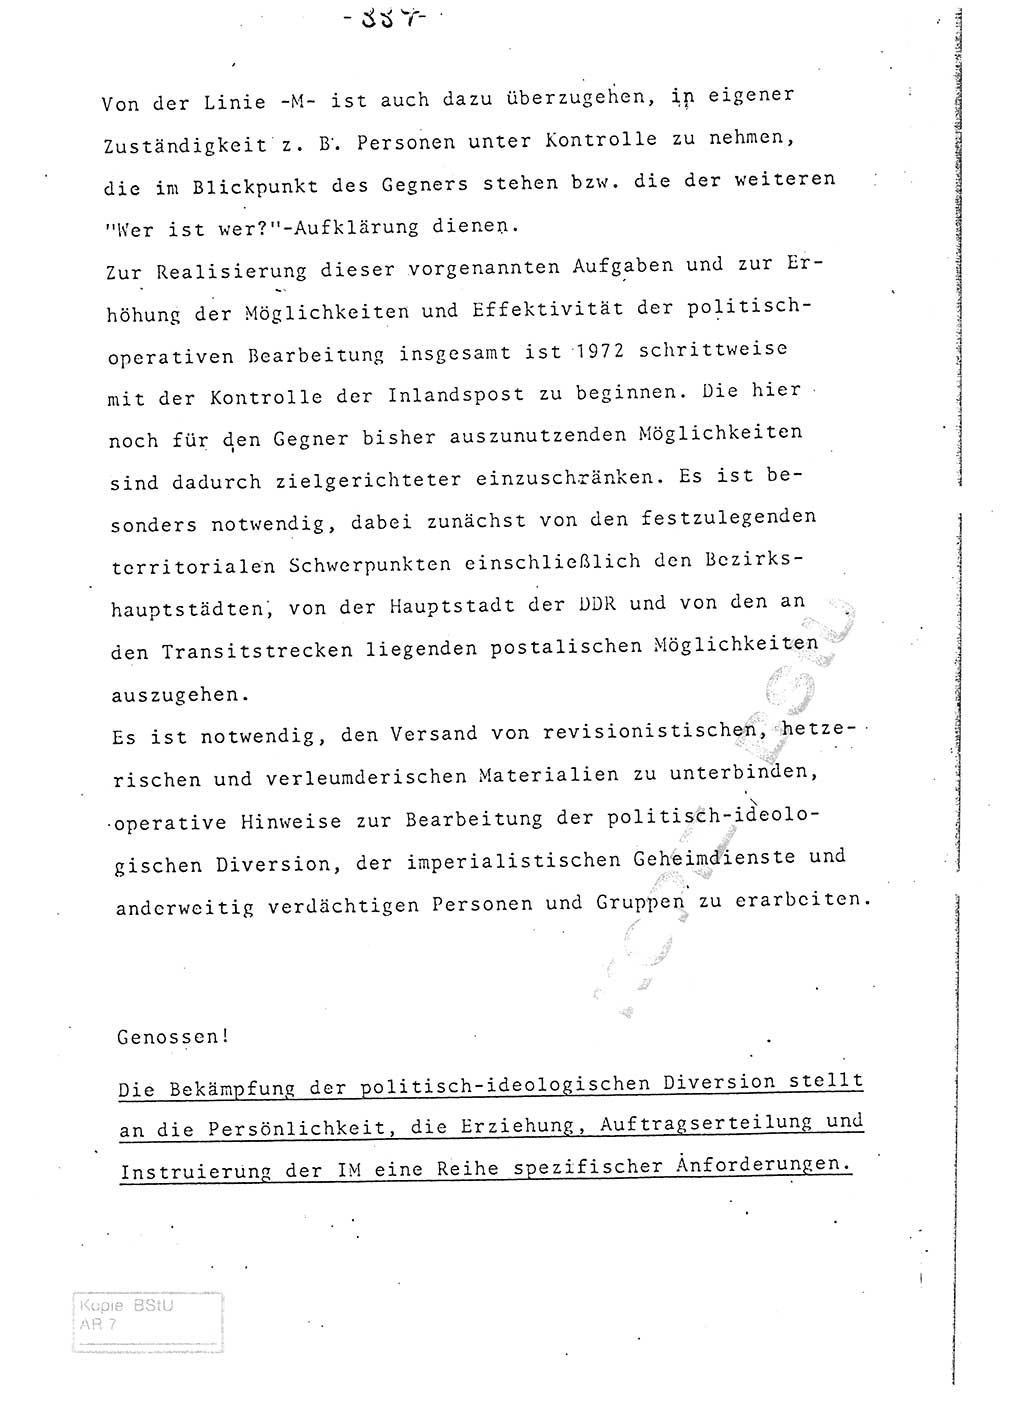 Referat (Entwurf) des Genossen Minister (Generaloberst Erich Mielke) auf der Dienstkonferenz 1972, Ministerium für Staatssicherheit (MfS) [Deutsche Demokratische Republik (DDR)], Der Minister, Geheime Verschlußsache (GVS) 008-150/72, Berlin 25.2.1972, Seite 334 (Ref. Entw. DK MfS DDR Min. GVS 008-150/72 1972, S. 334)